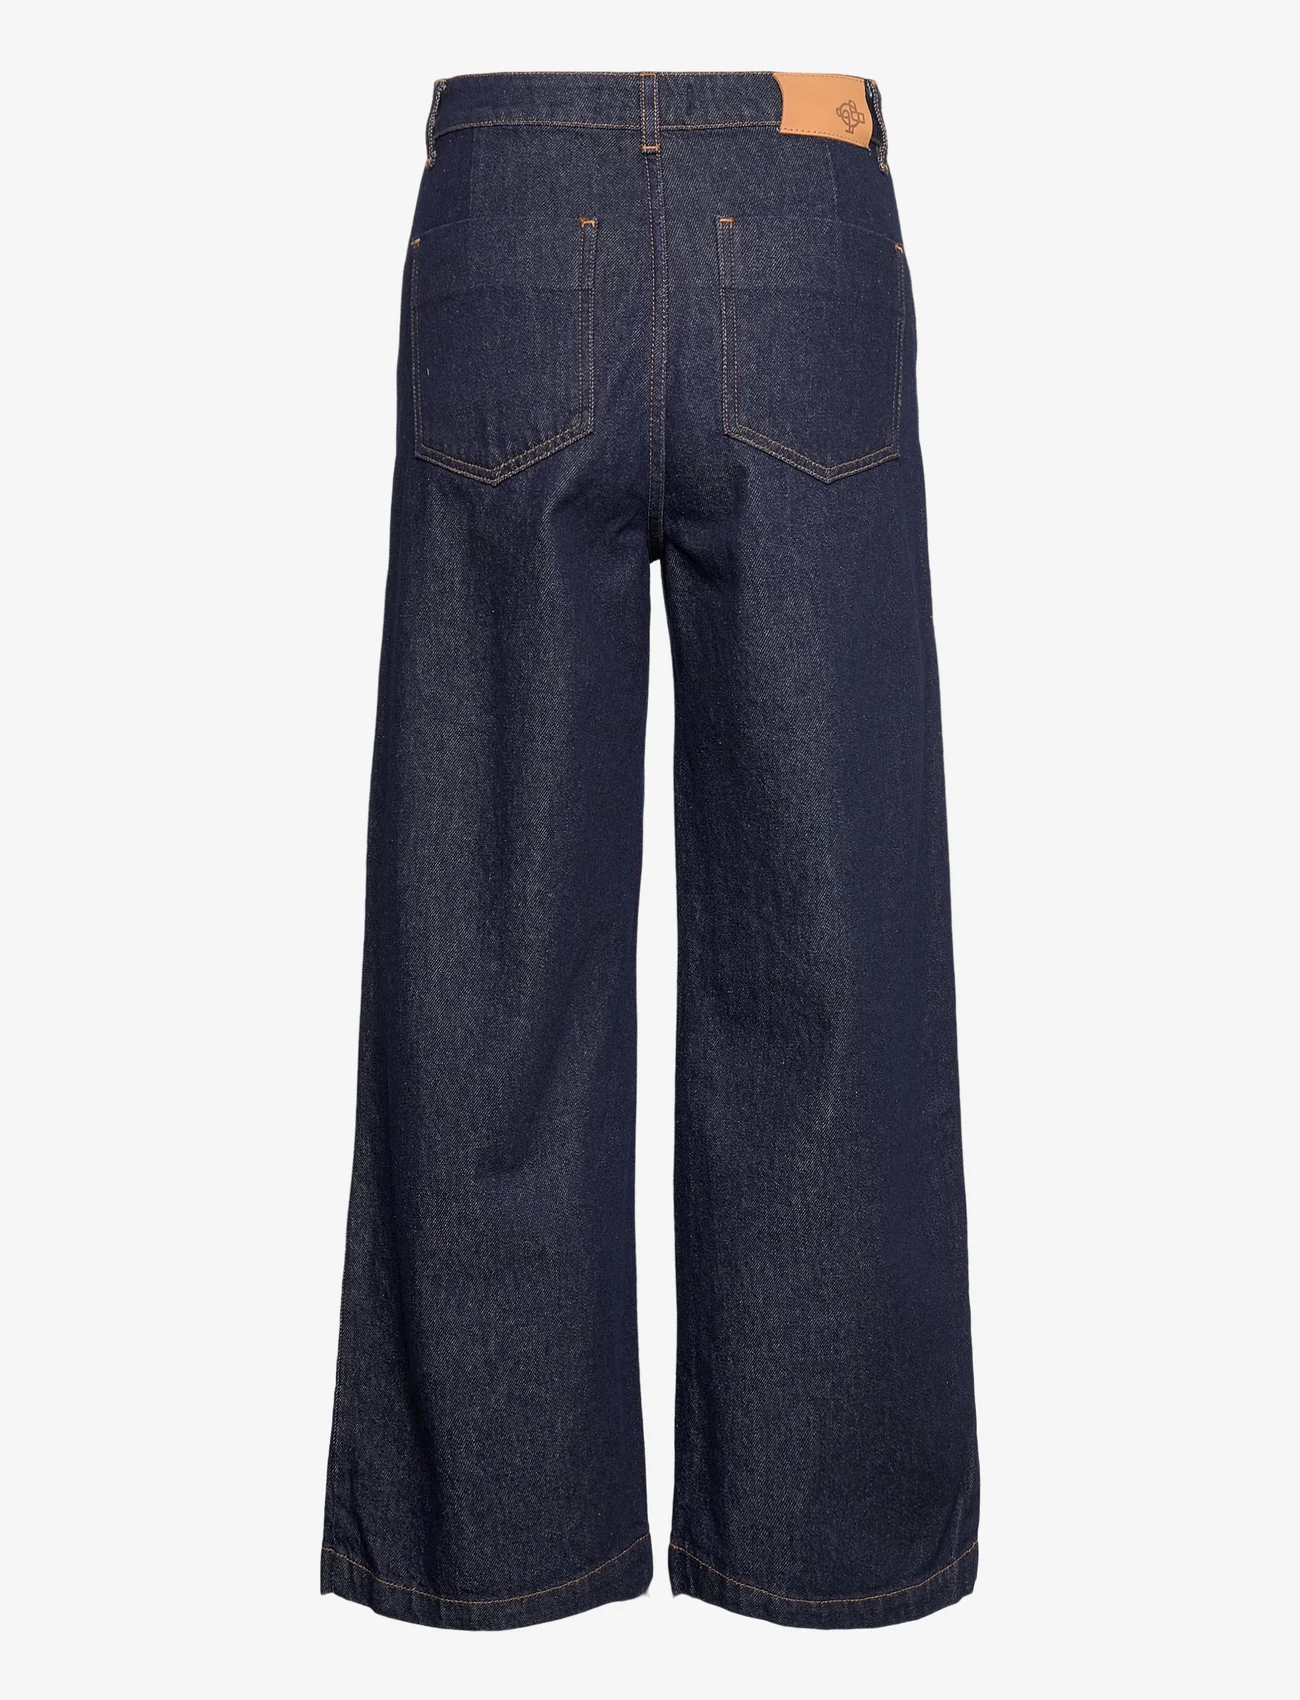 Just Female - Calm jeans 0103 - hosen mit weitem bein - blue rinse - 1